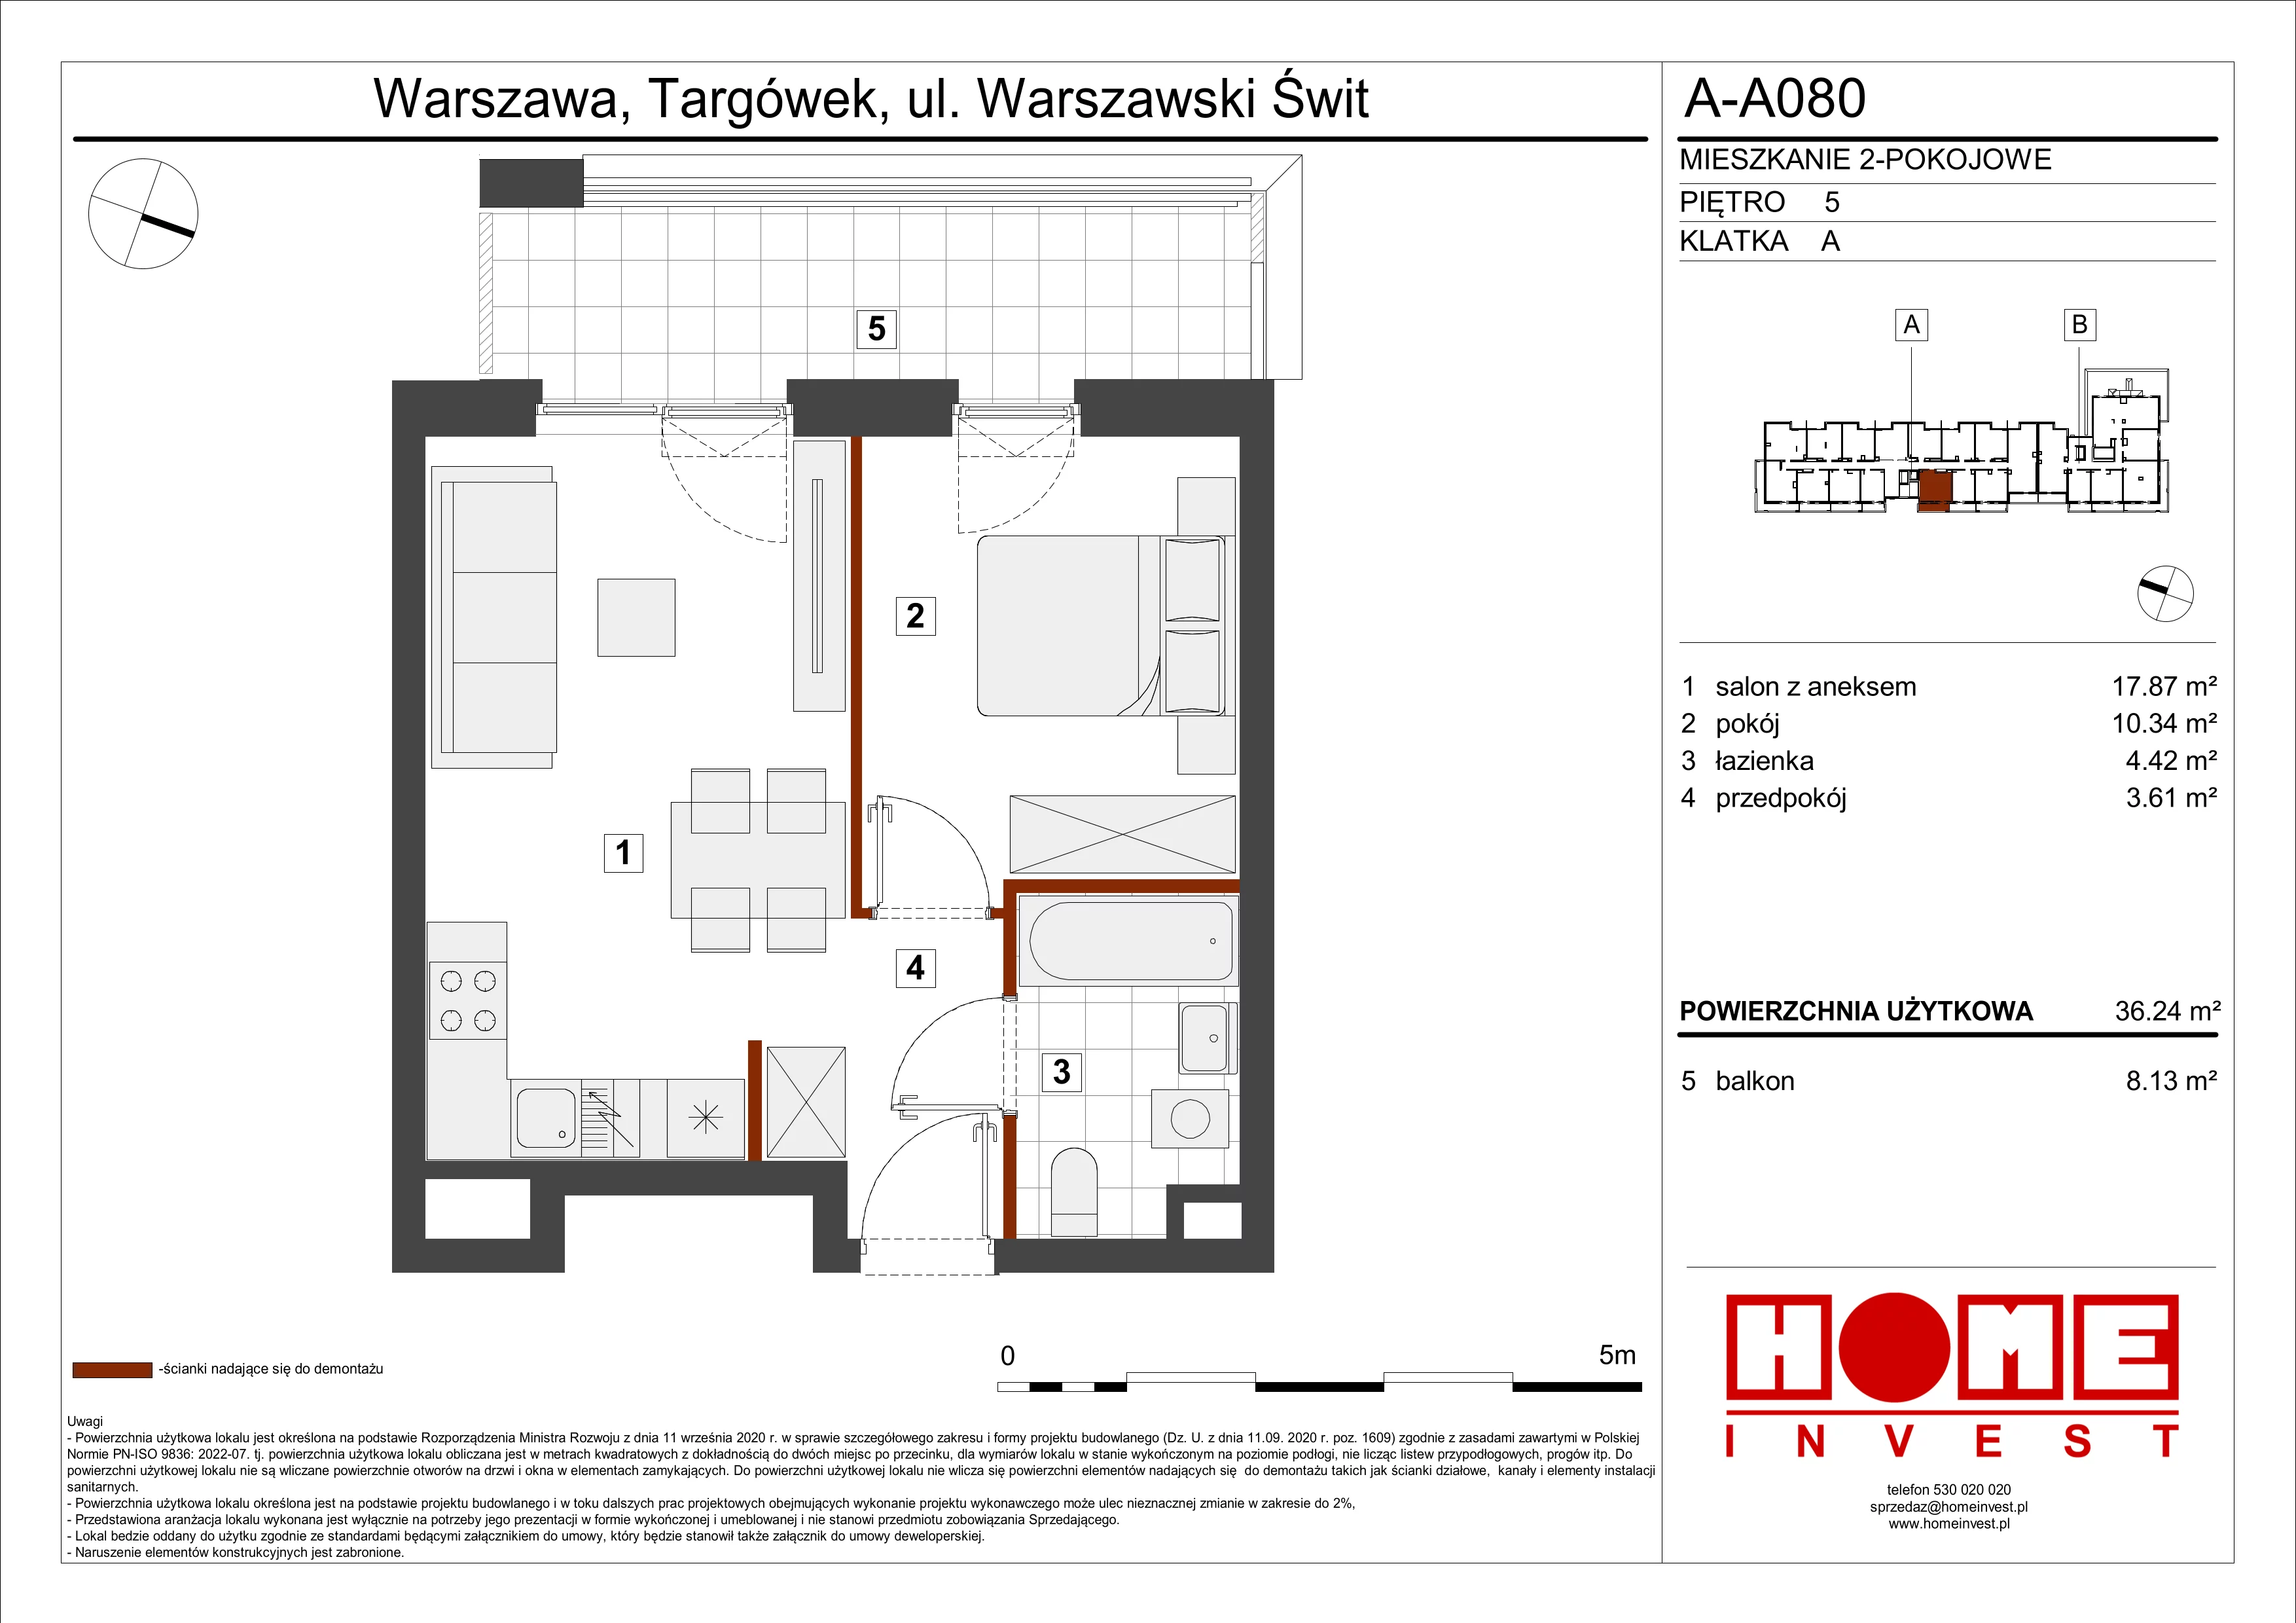 Mieszkanie 36,24 m², piętro 5, oferta nr A-A080, Warszawski Świt, Warszawa, Targówek, Bródno, ul. Warszawski Świt 5